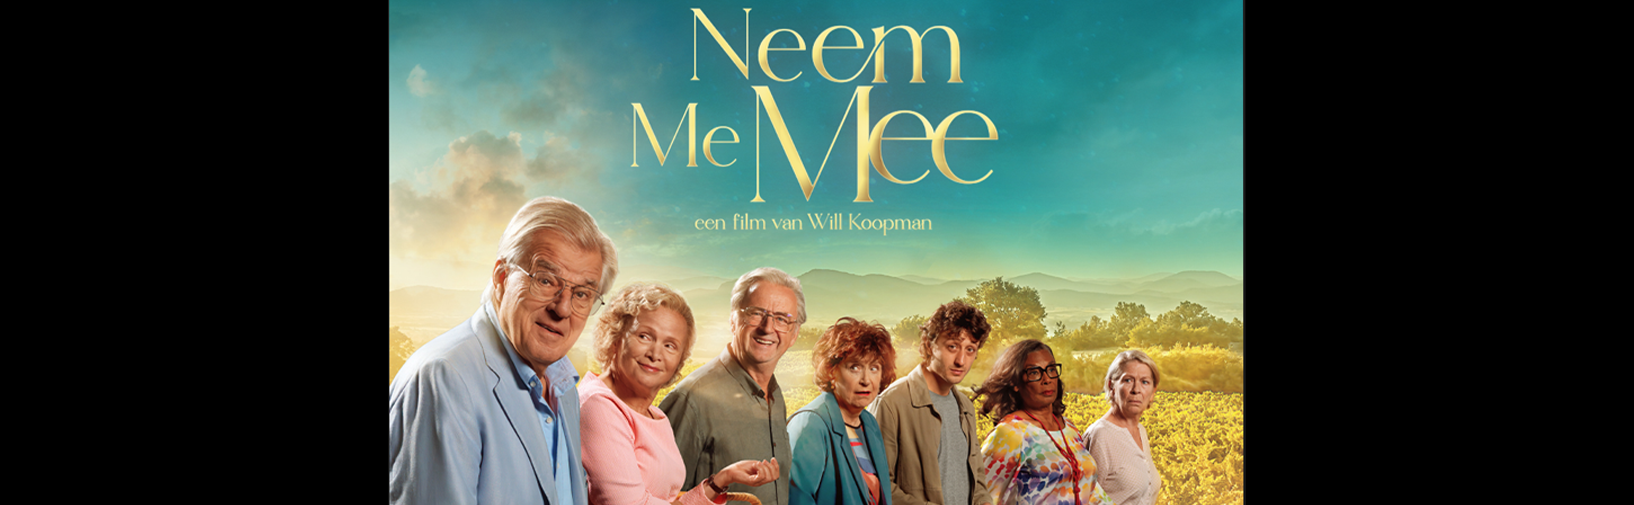 Eerste beelden Will Koopman film Neem Me Mee hero image